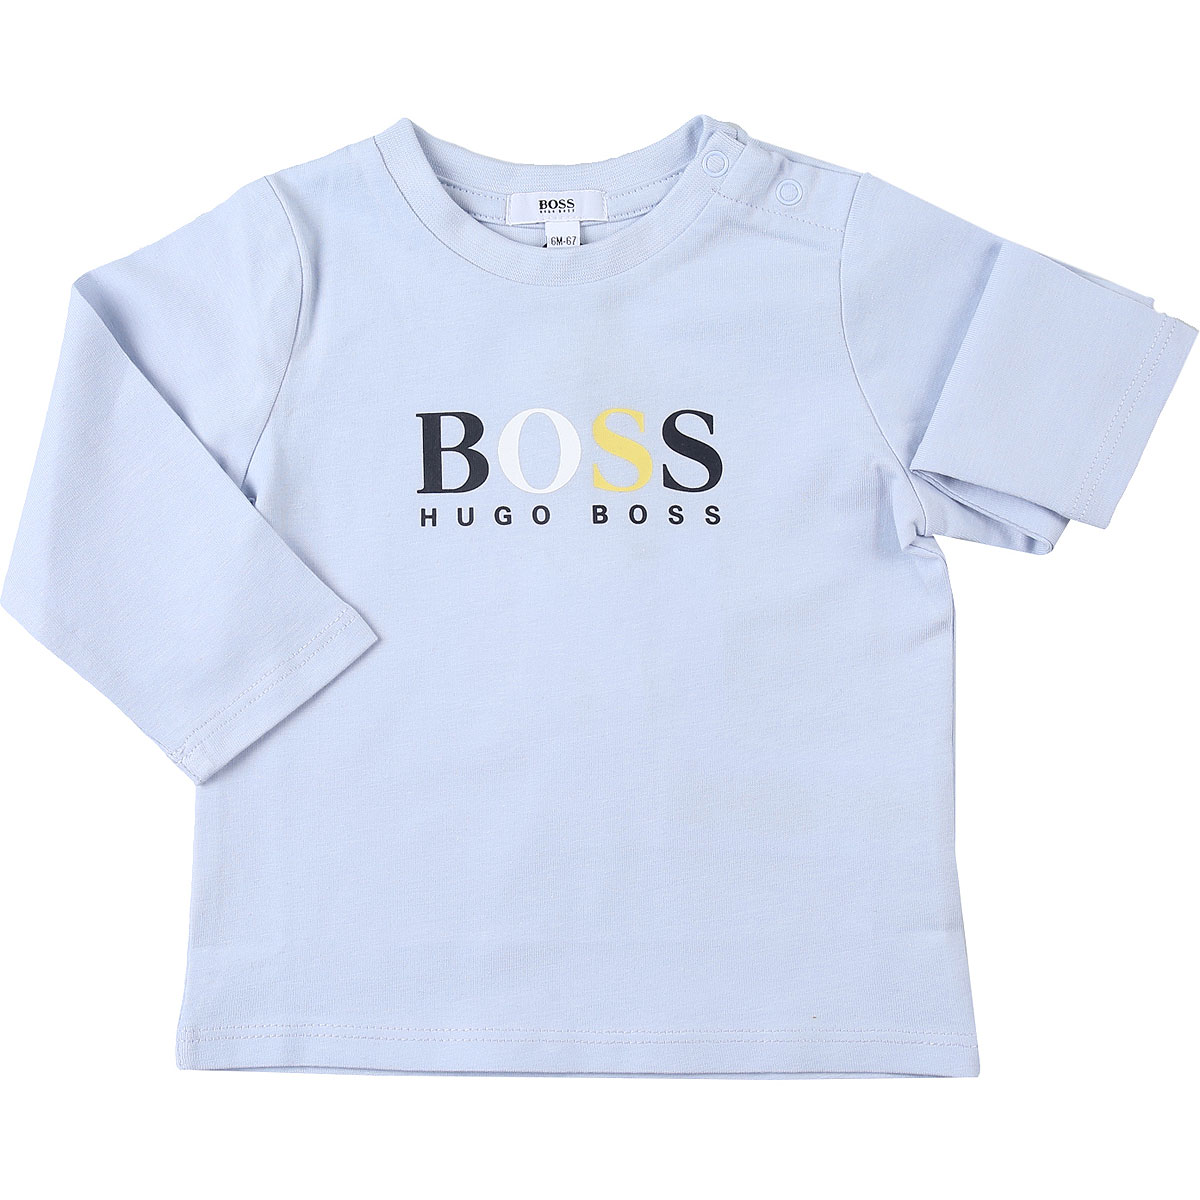 Hugo Boss Baby T-Shirt für Jungen Günstig im Sale, Himmelblau., Baumwolle, 2017, 12 M 18M 3M 6M 9M